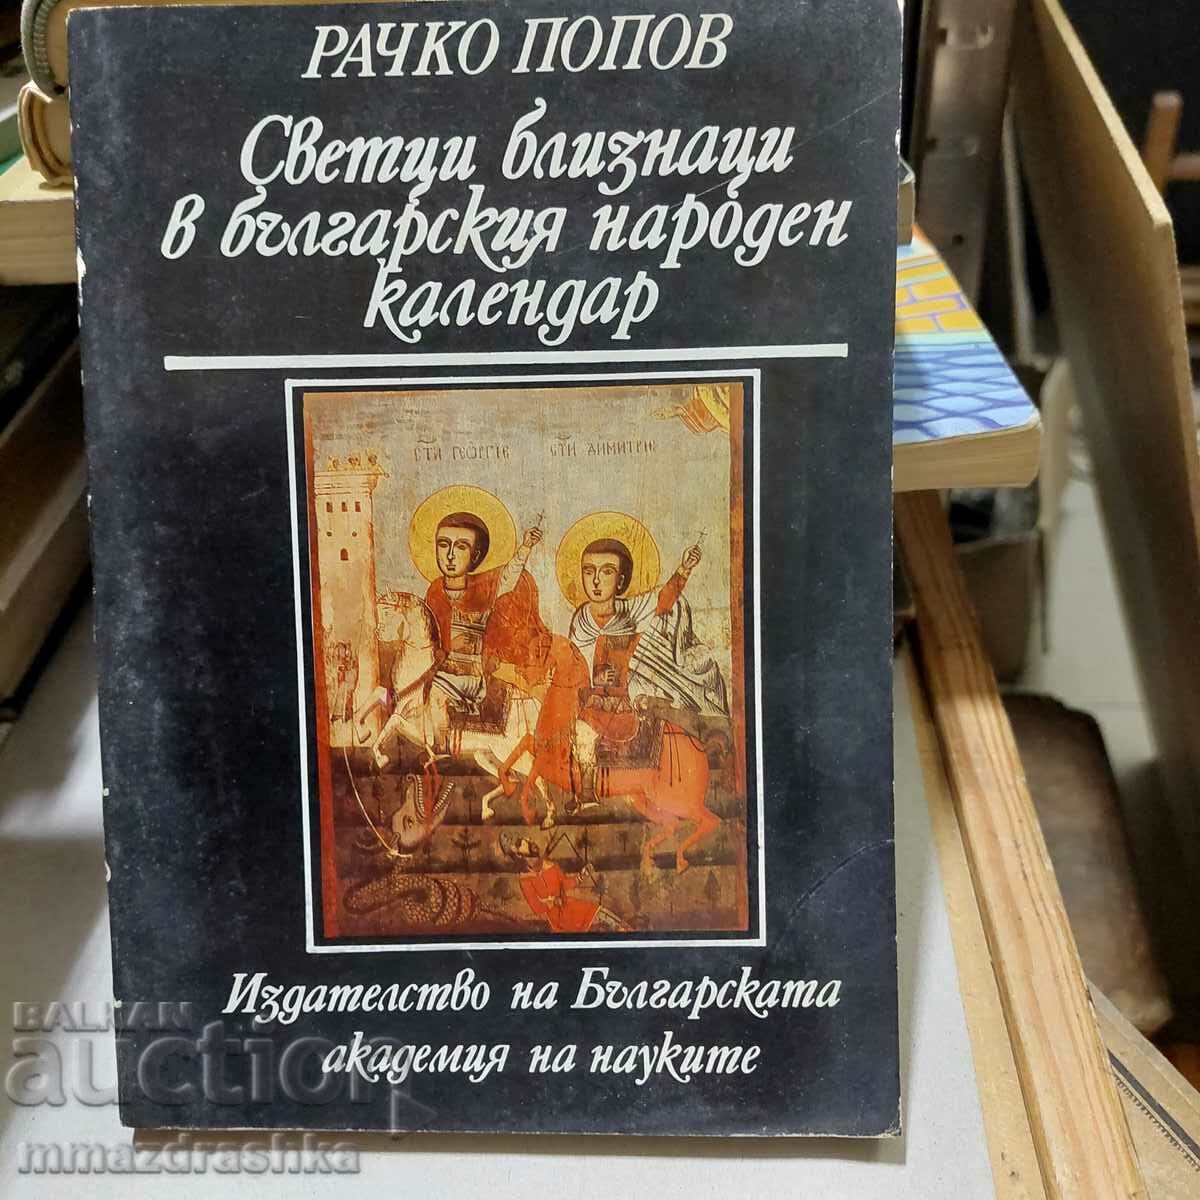 Δίδυμοι άγιοι στο βουλγαρικό εθνικό ημερολόγιο, Rachko Popov